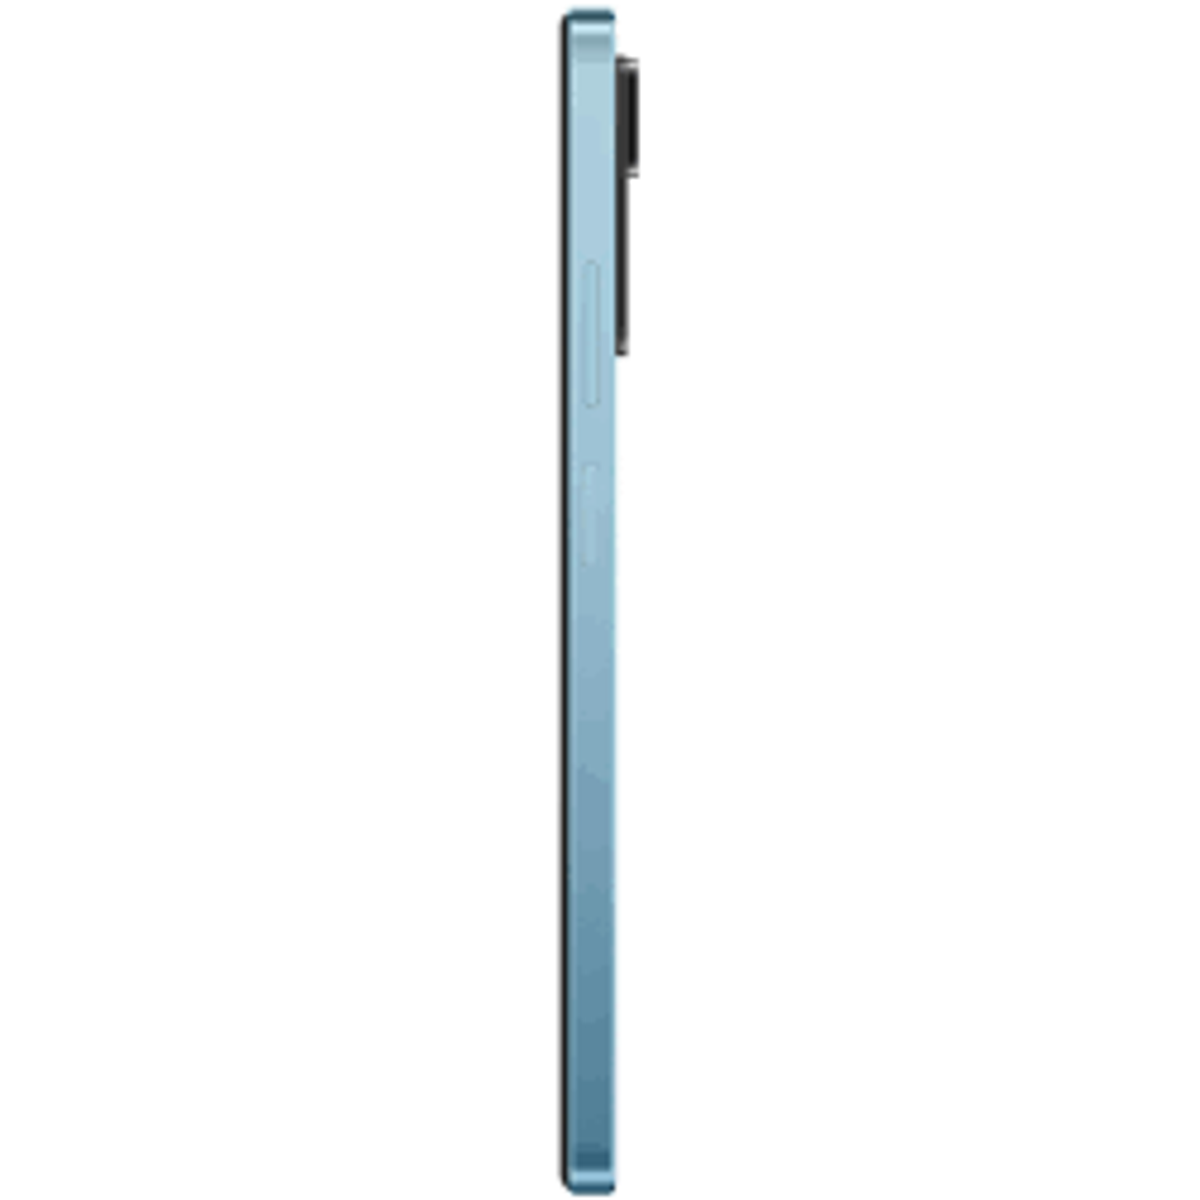 XIAOMI Redmi Note 11 Pro 64,00 SIM Dual GB Blau